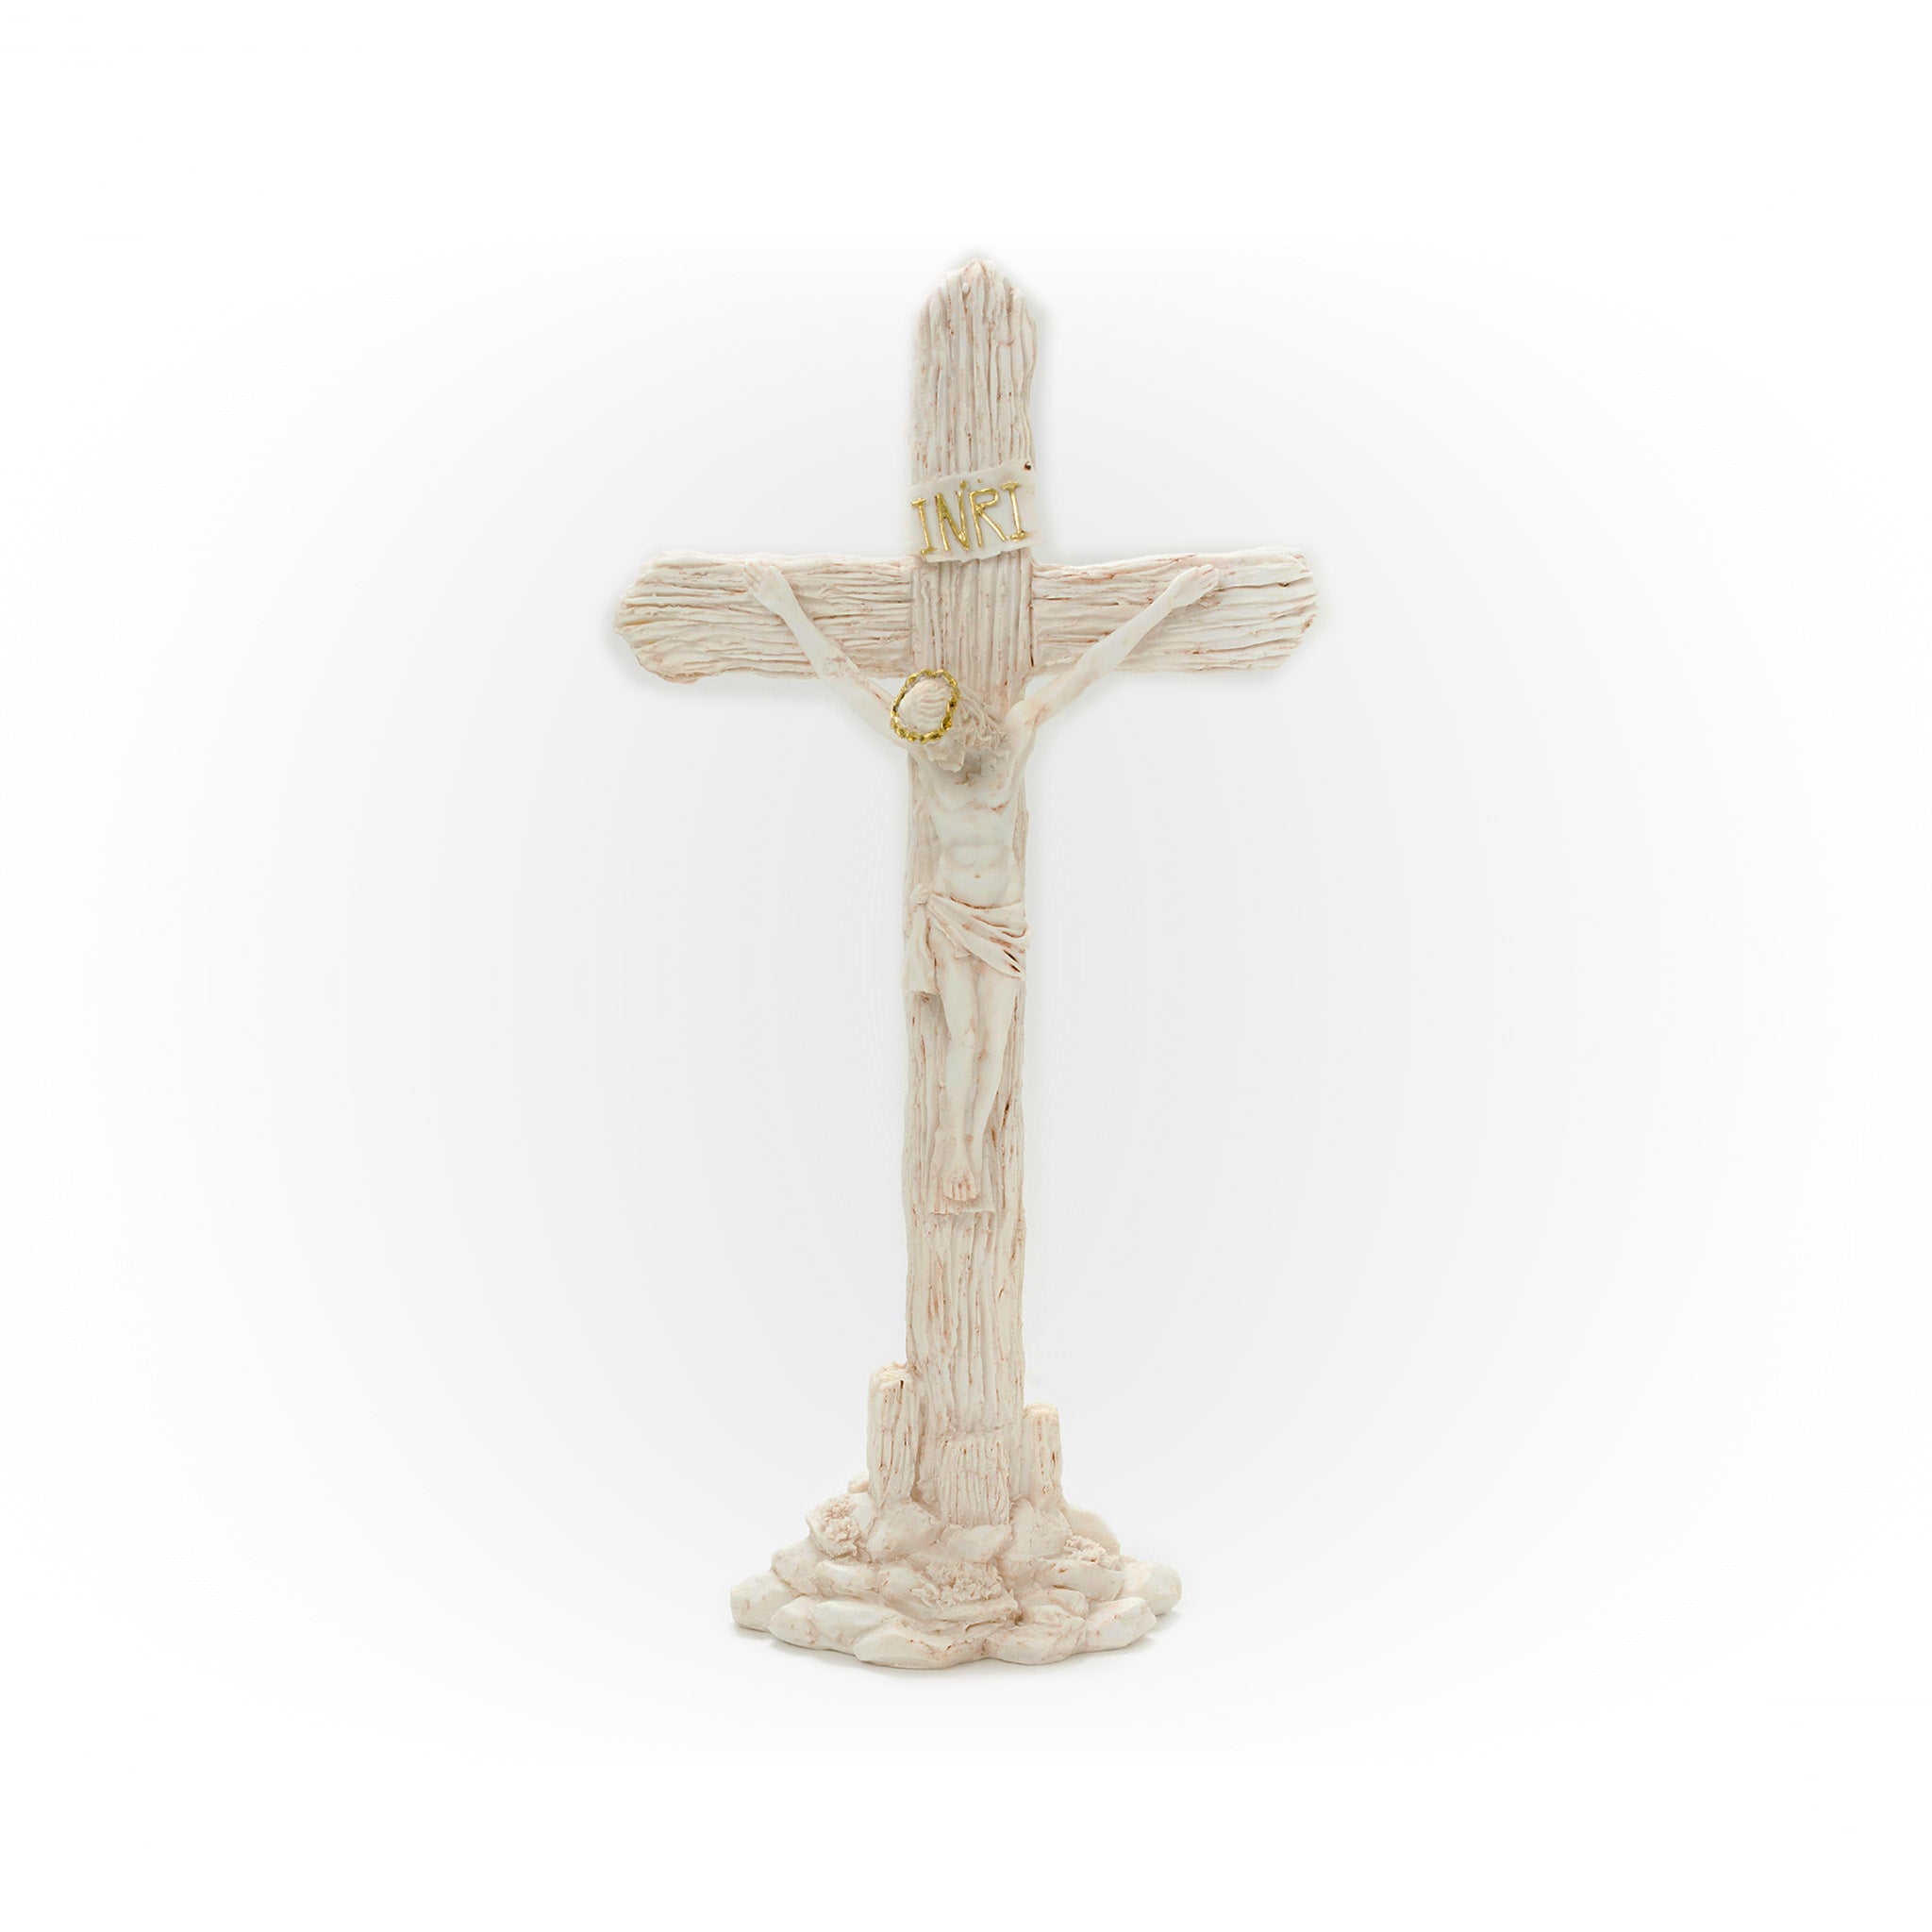 standing crucifix